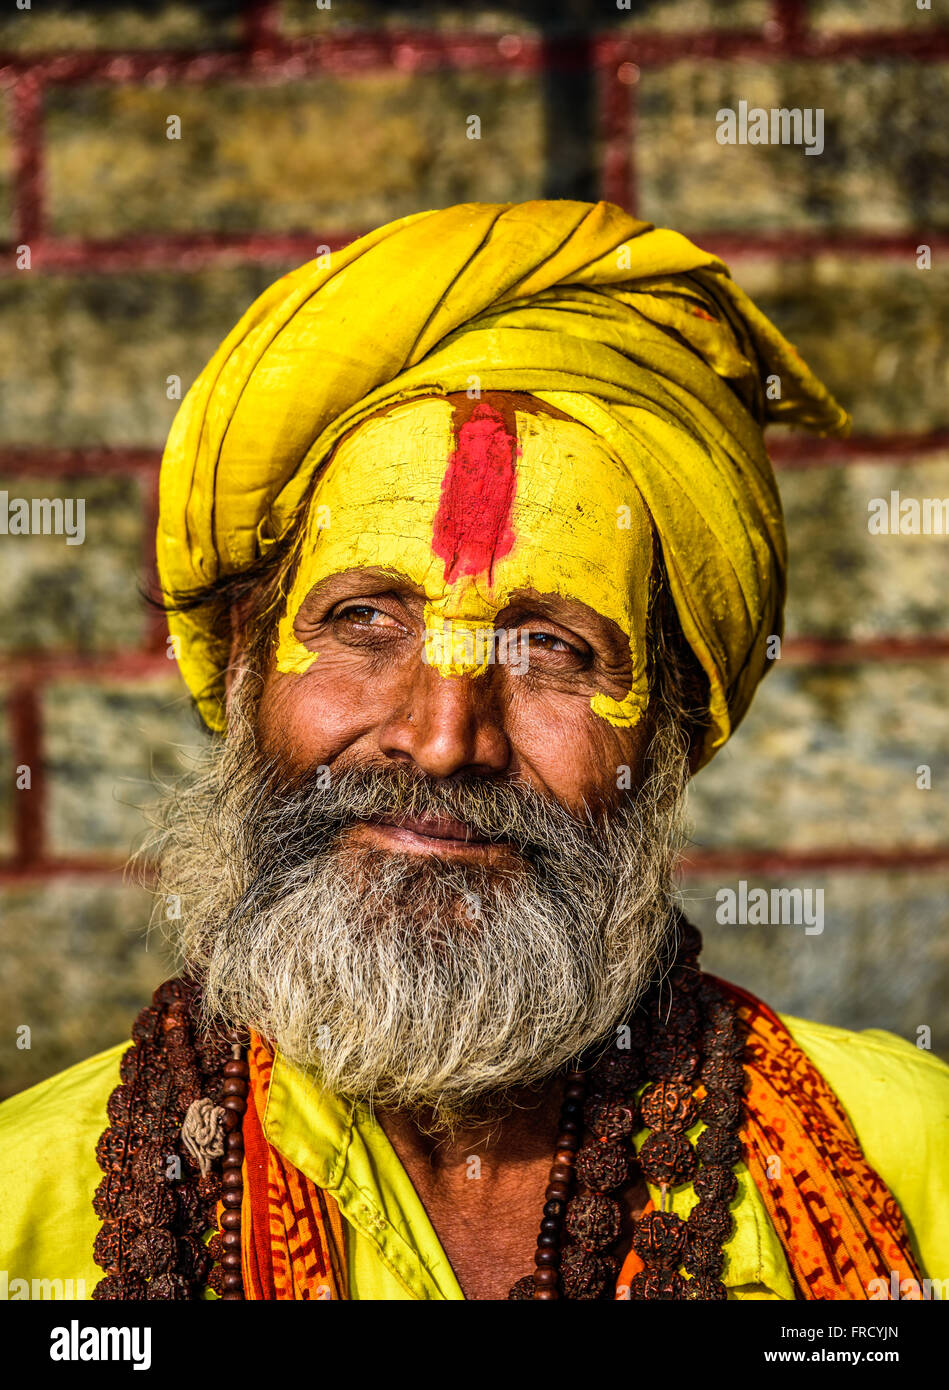 Portrait de sadhu baba (saint homme) avec la peinture du visage jaune dans l'ancien temple de Pashupatinath Banque D'Images